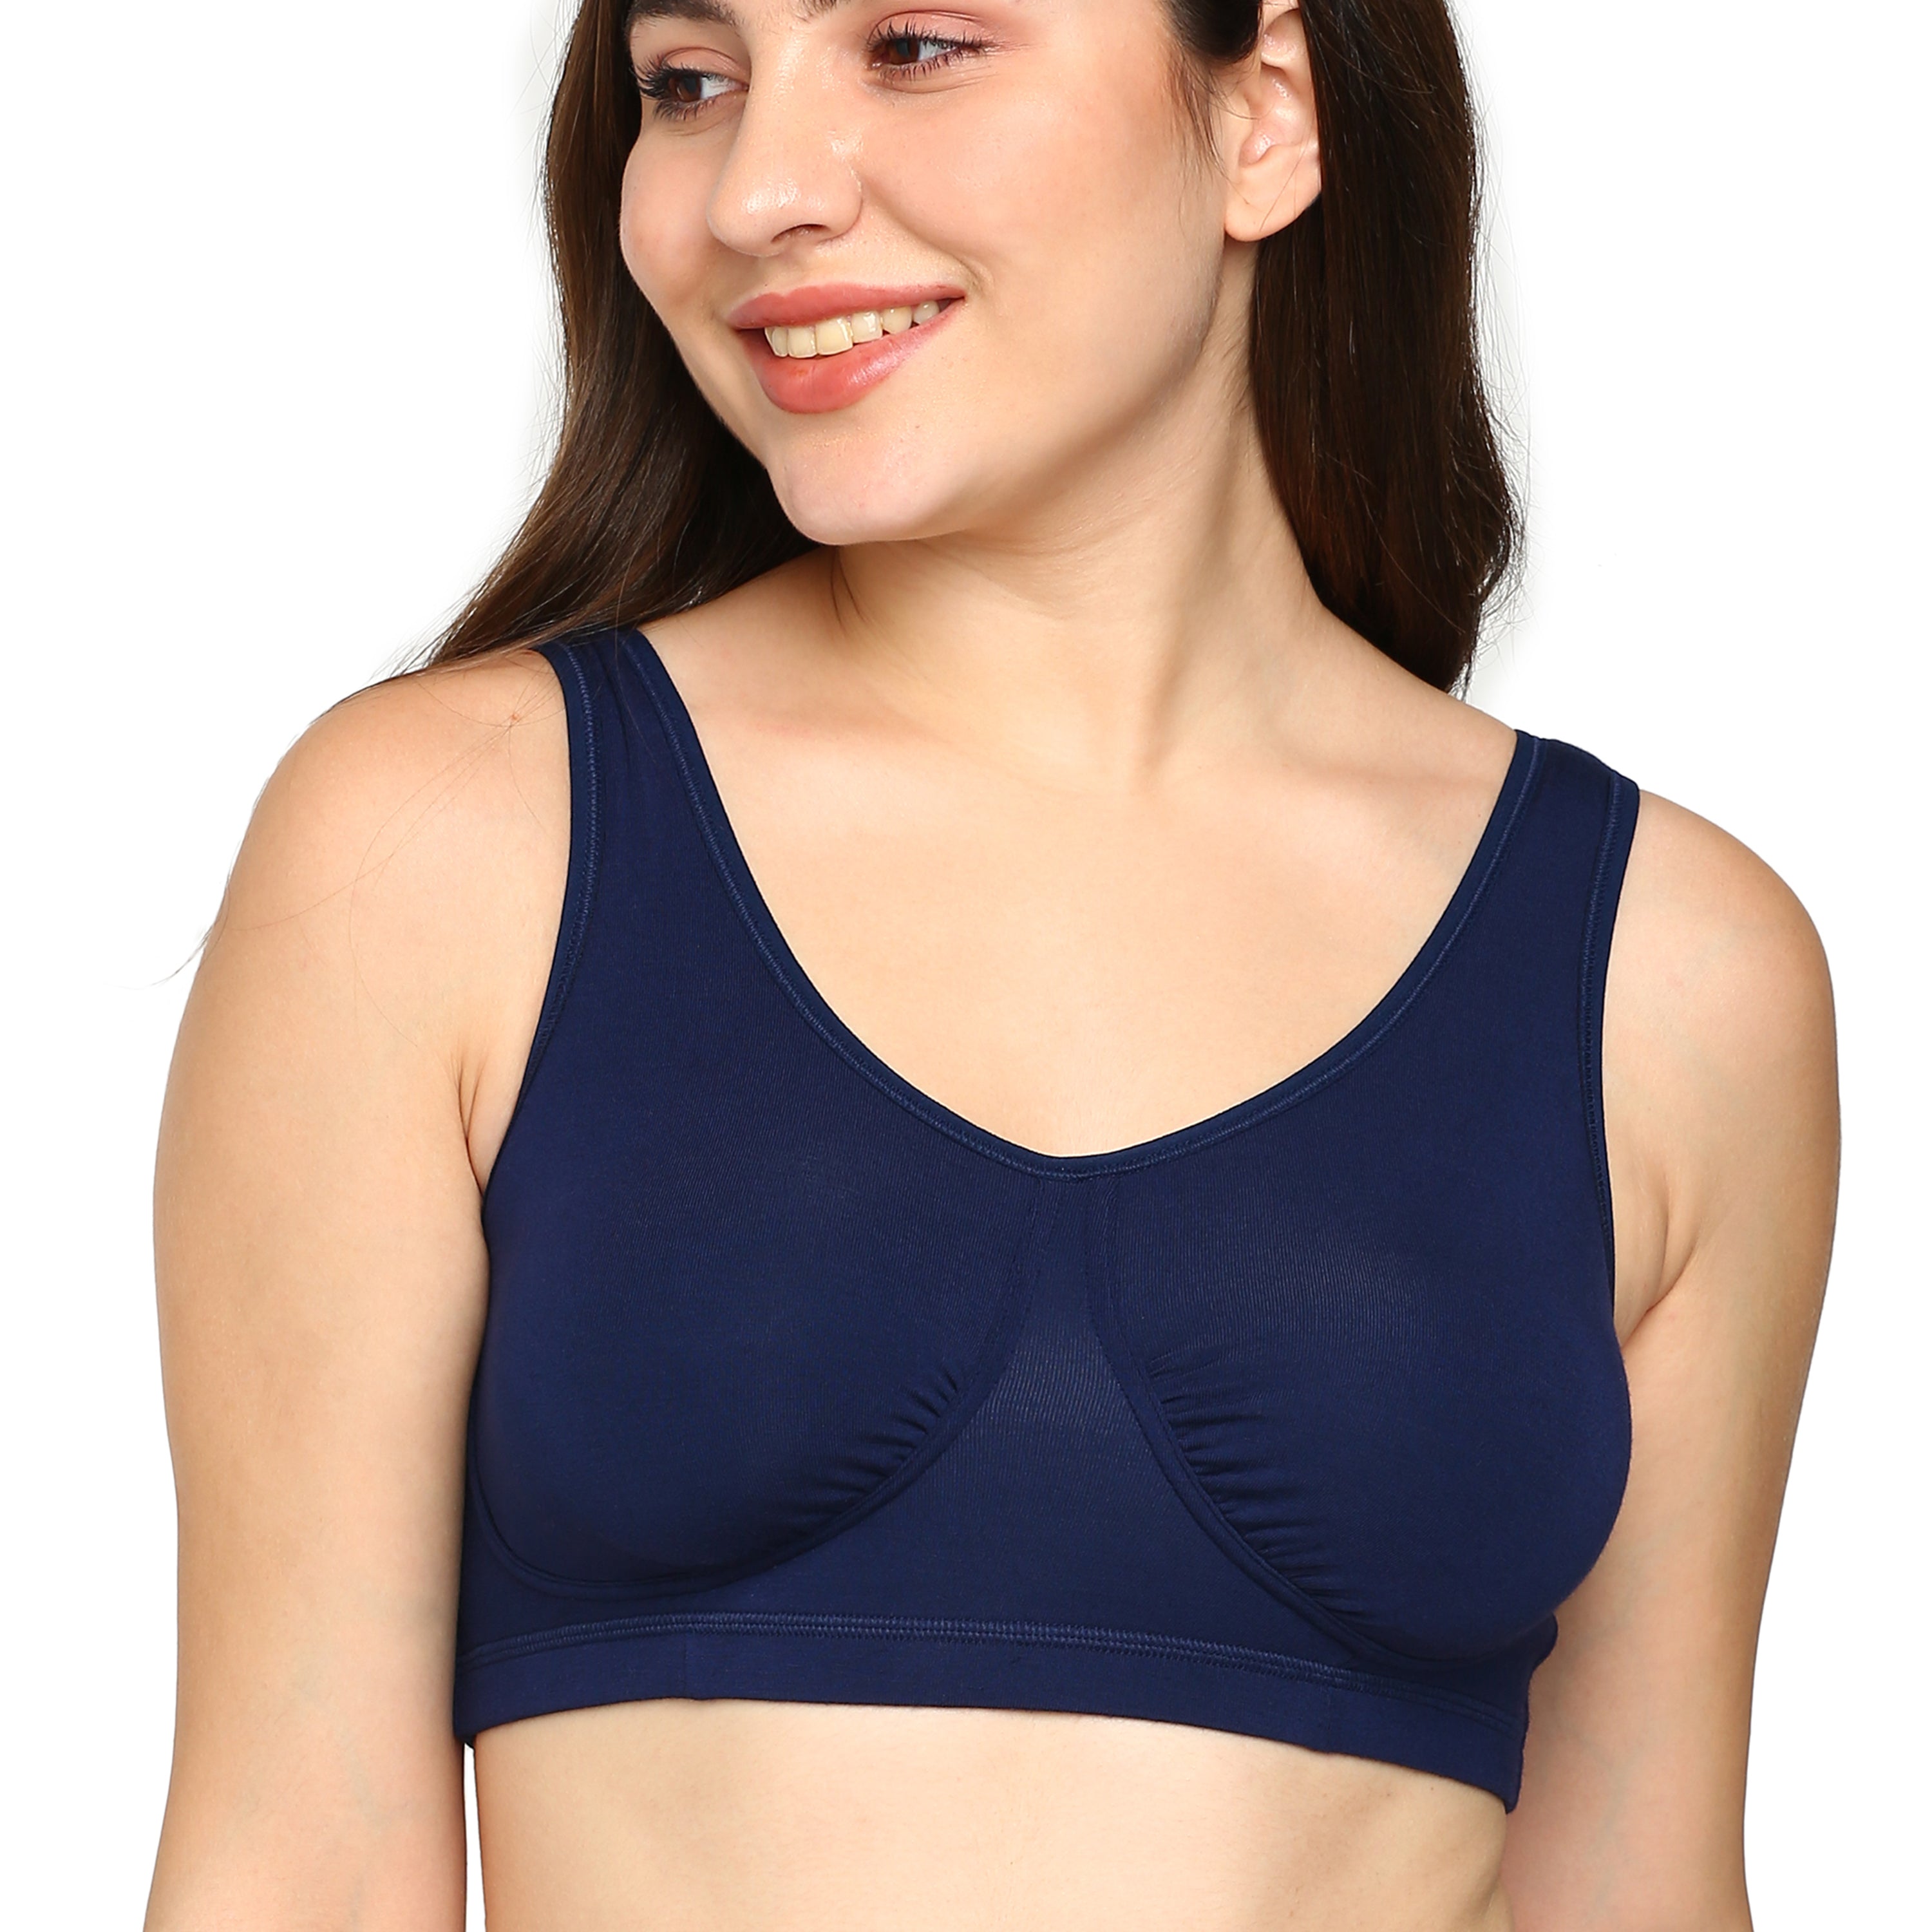 blossom-night bra-navy blue1-Slip-On-utility based bra